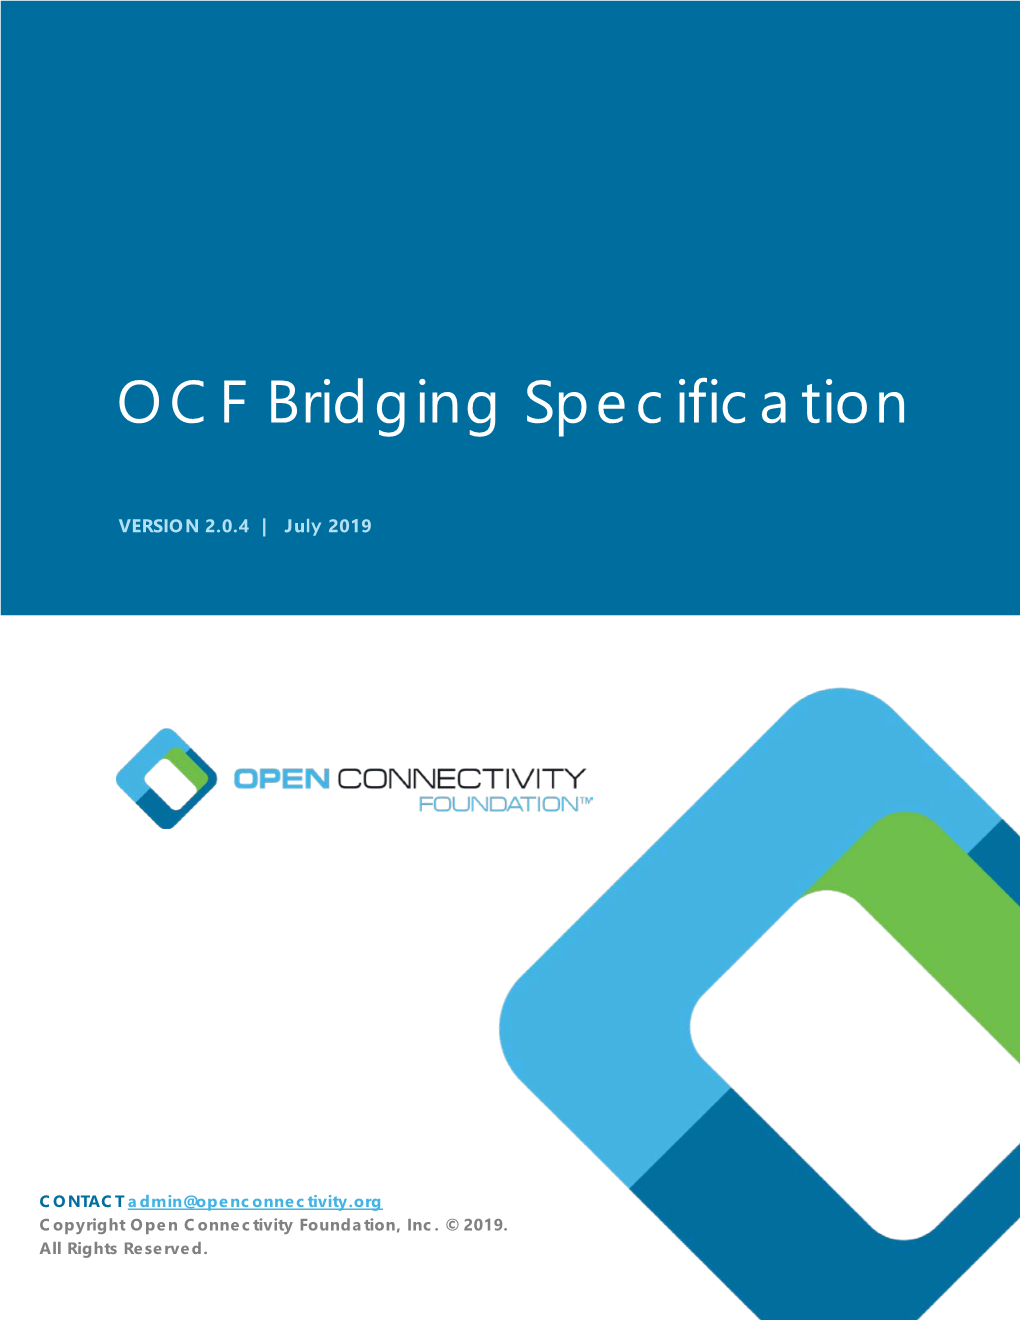 OCF Bridging Specification